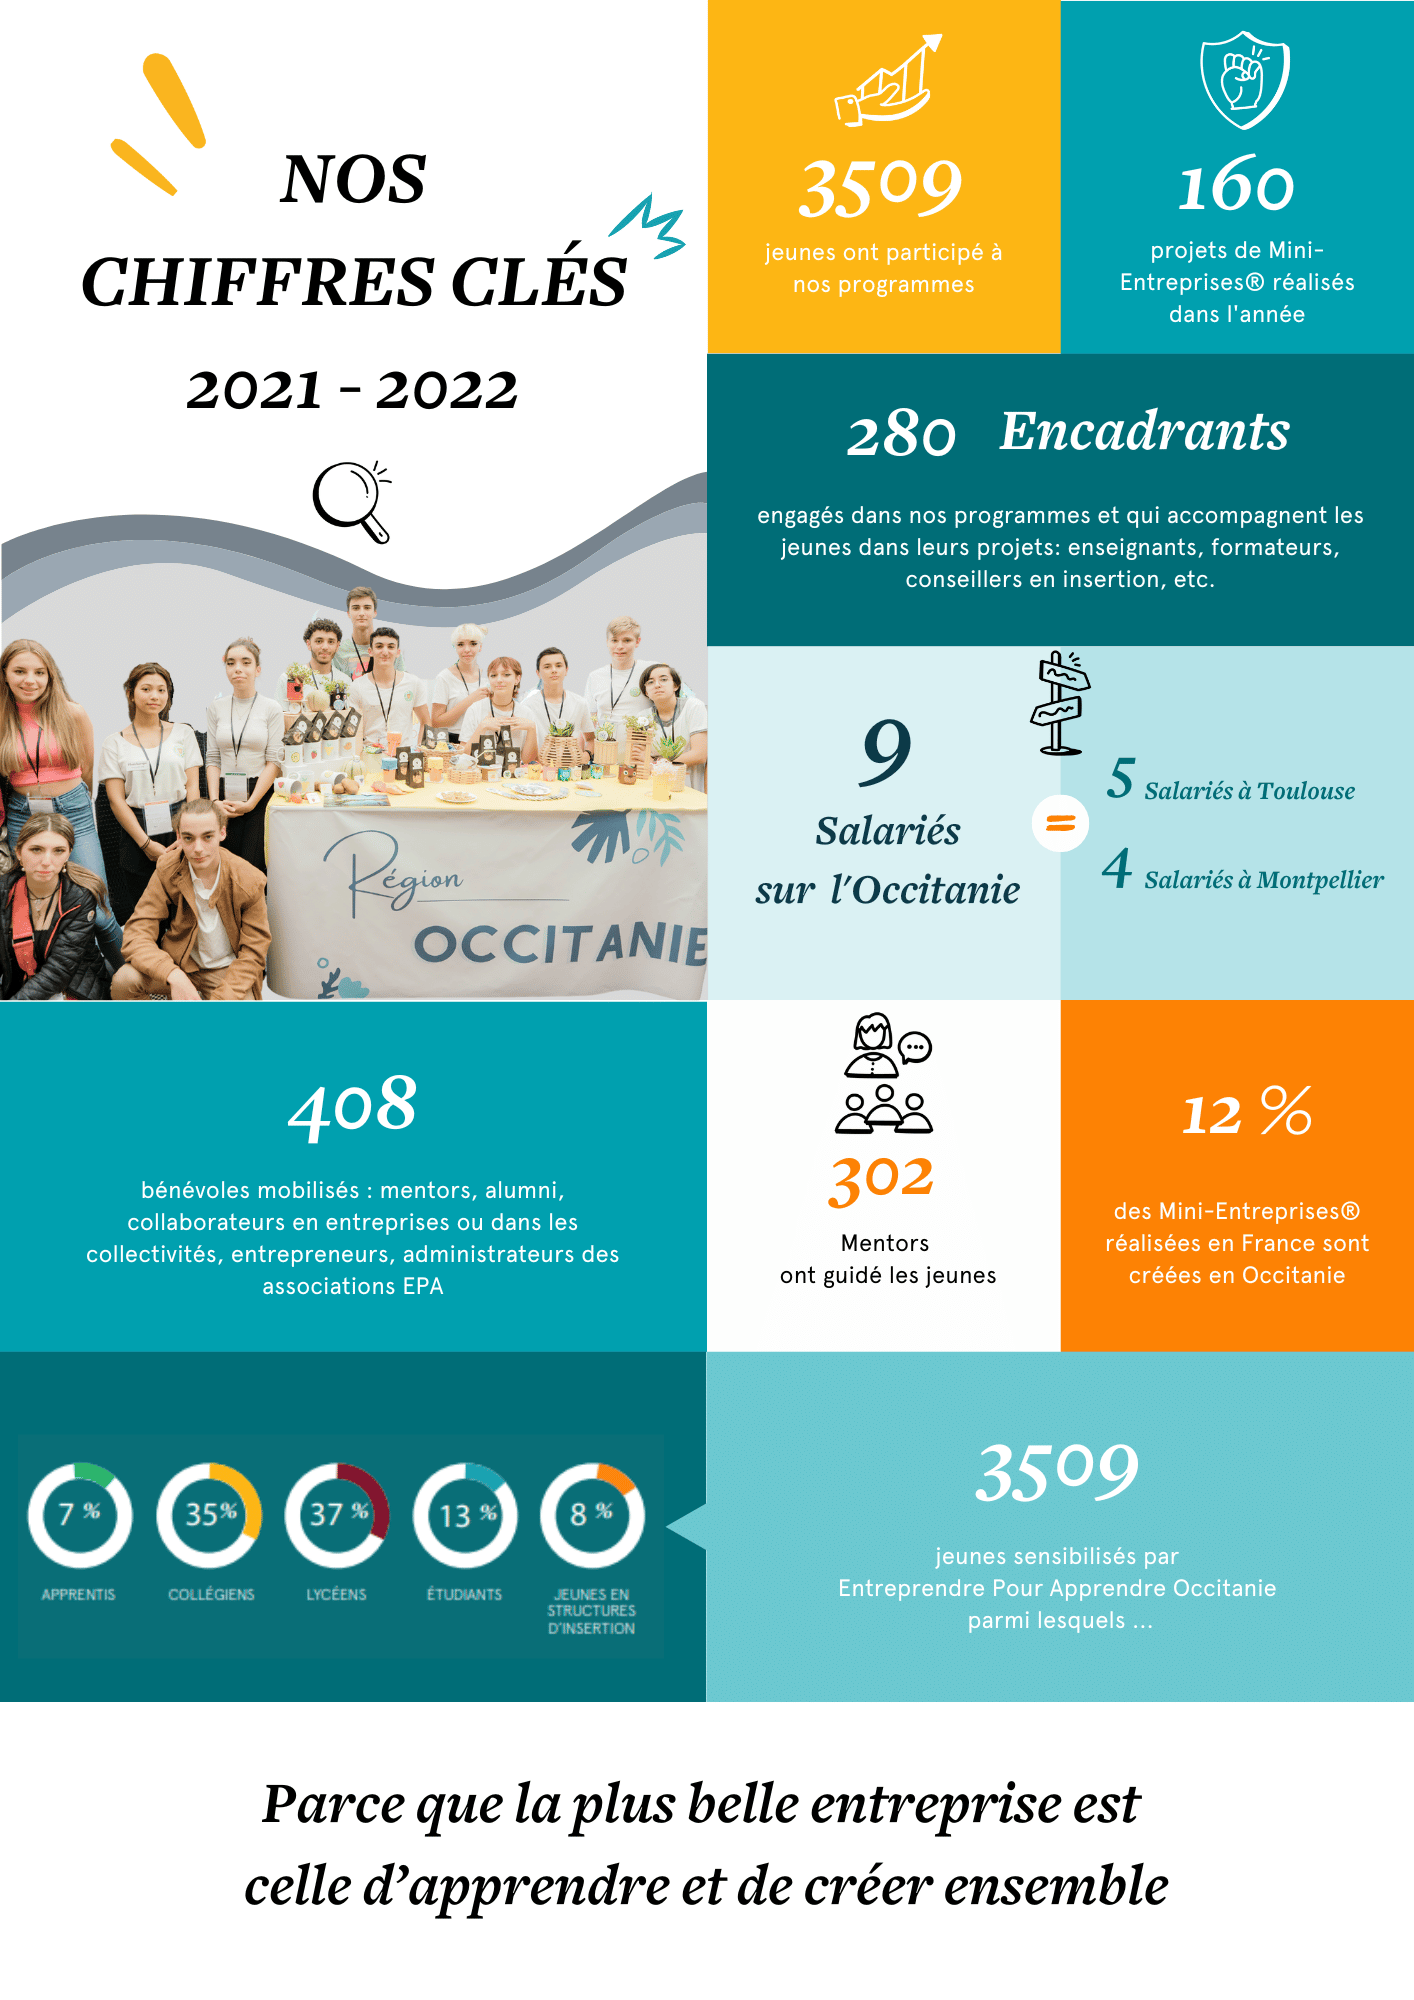 Chiffres clés 2021-2022 de Entreprendre Pour Apprendre Occitanie.
